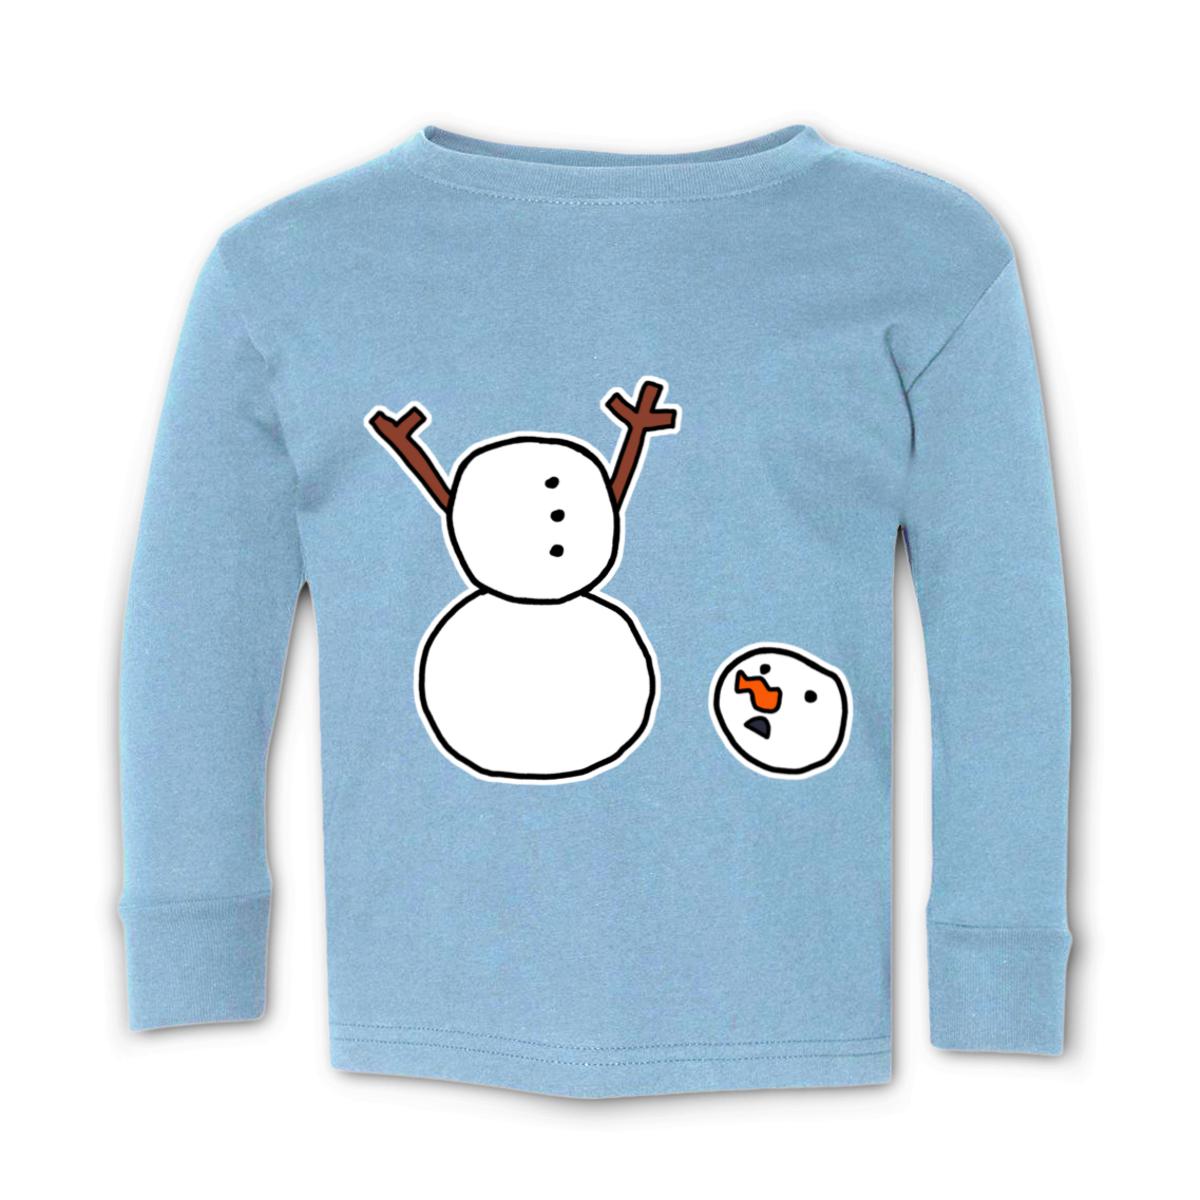 Headless Snowman Toddler Long Sleeve Tee 4T light-blue